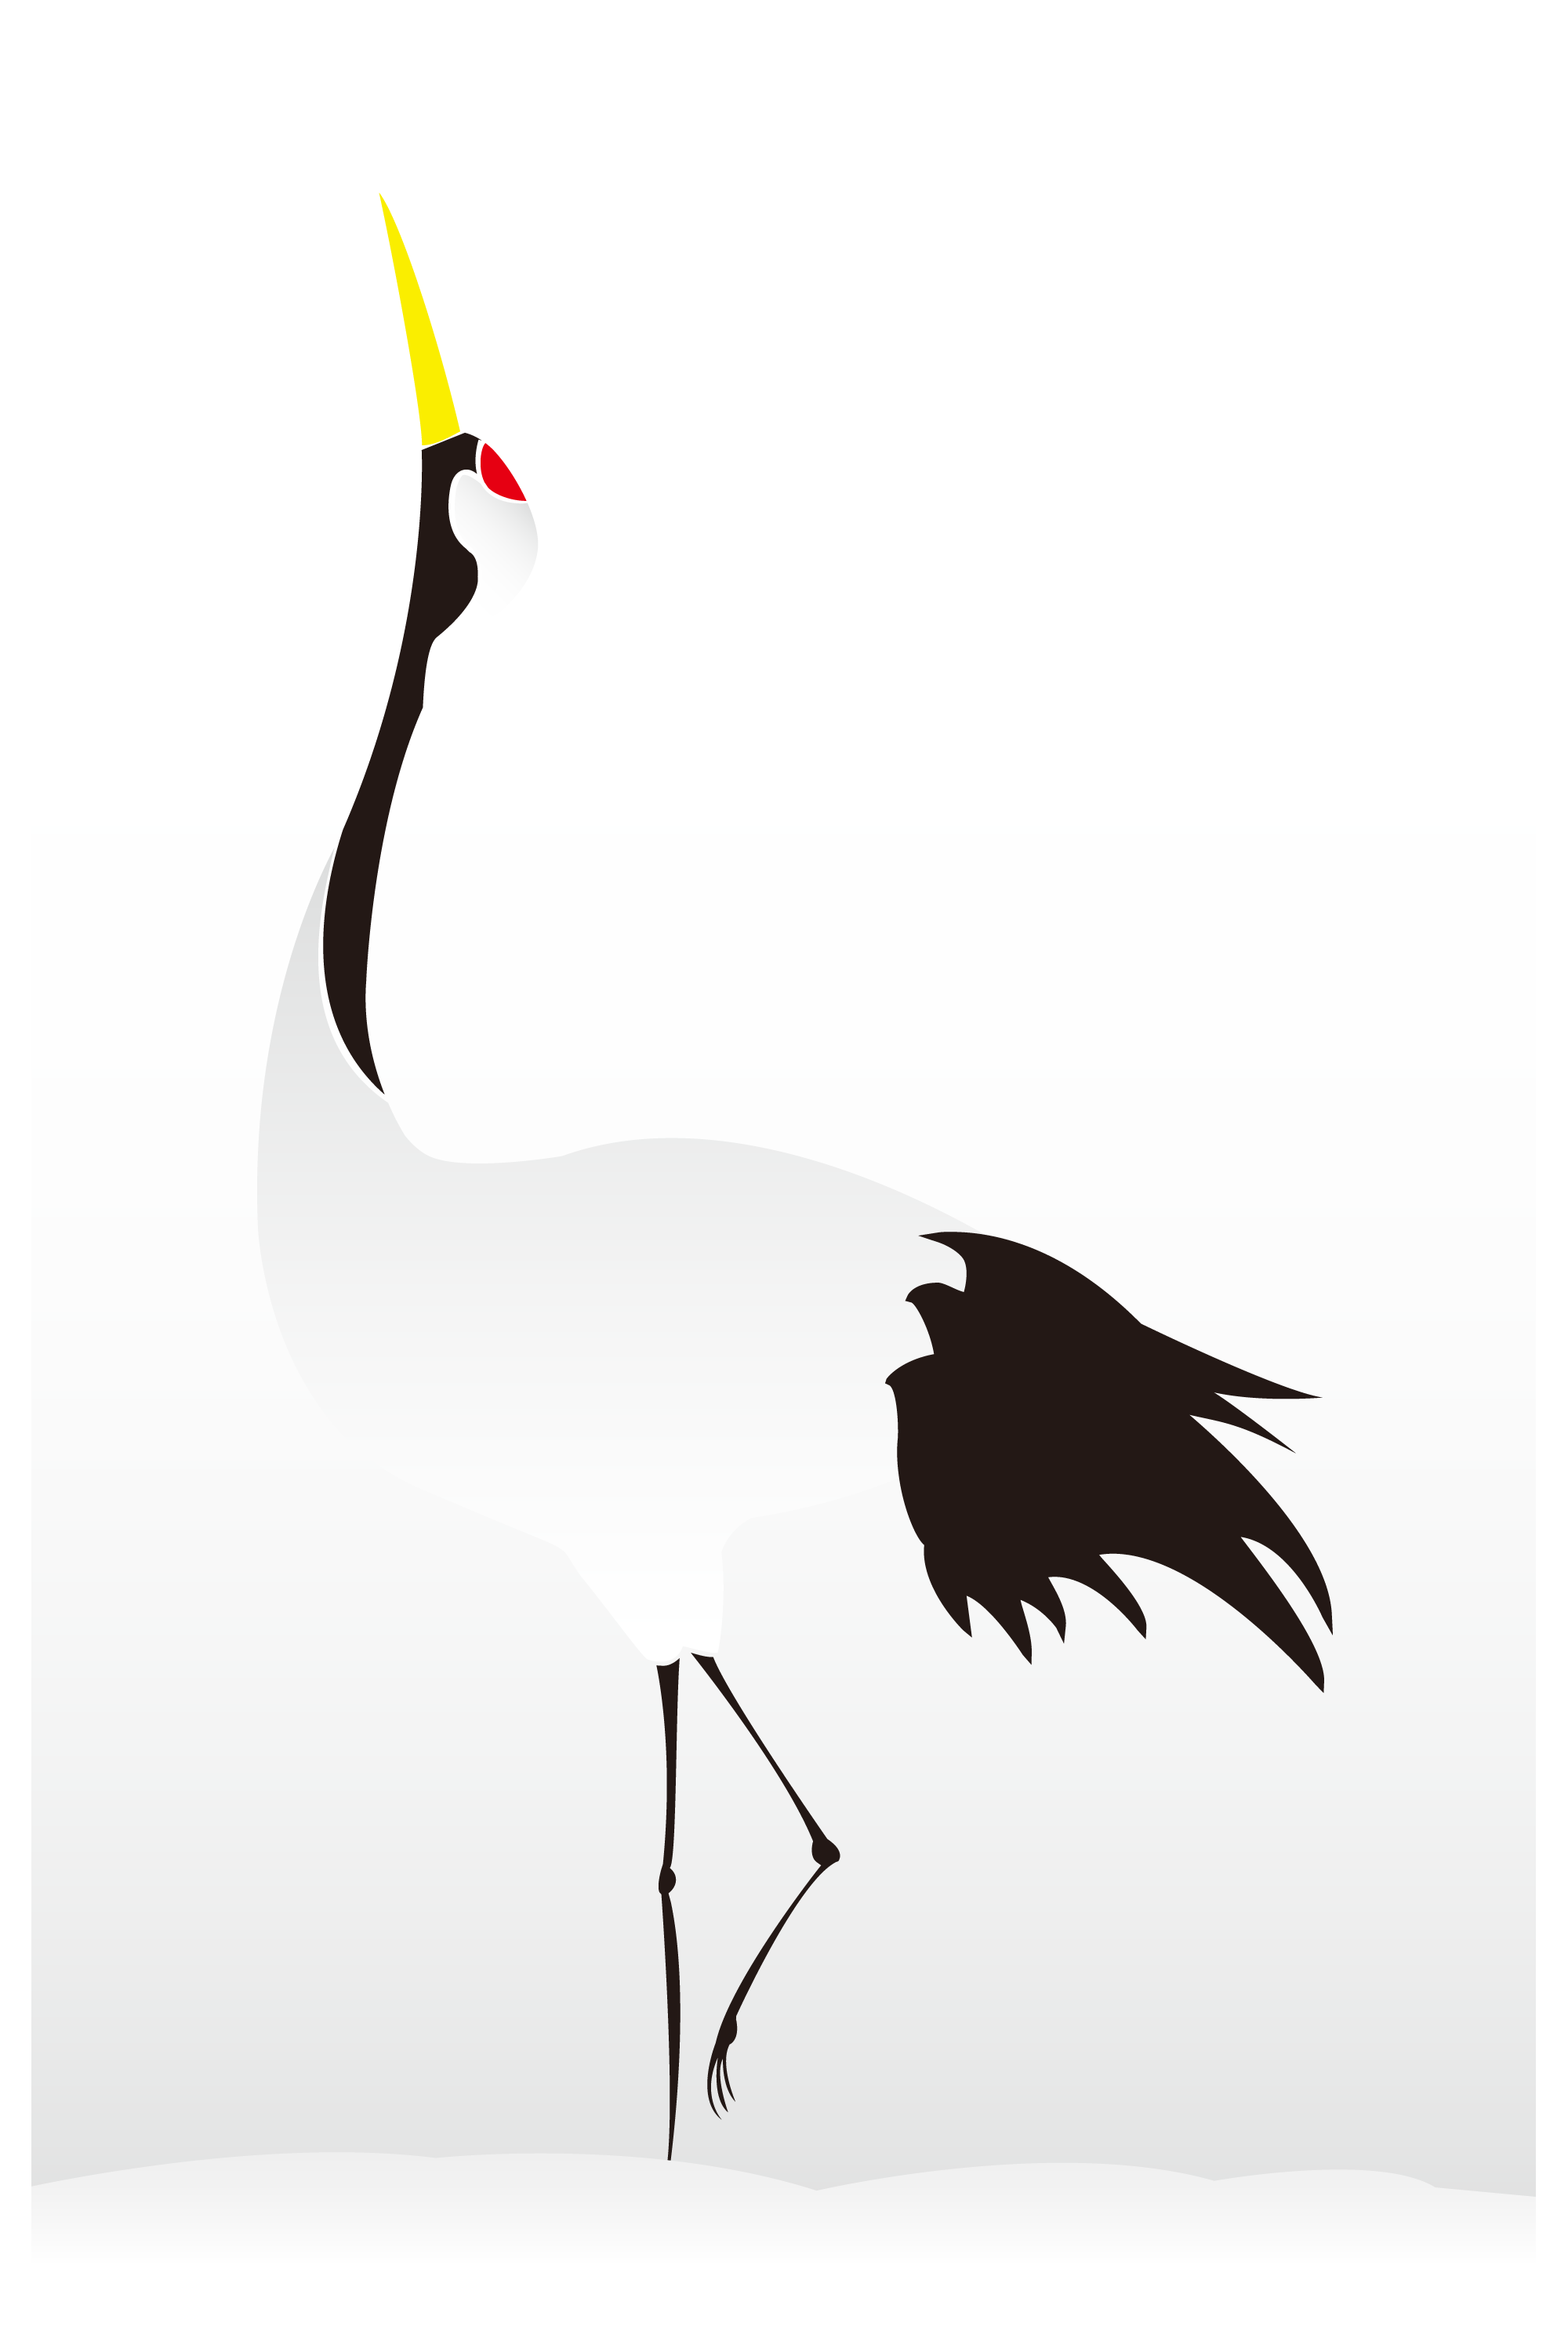 綺麗な鶴 イラスト フリー 最高の動物画像